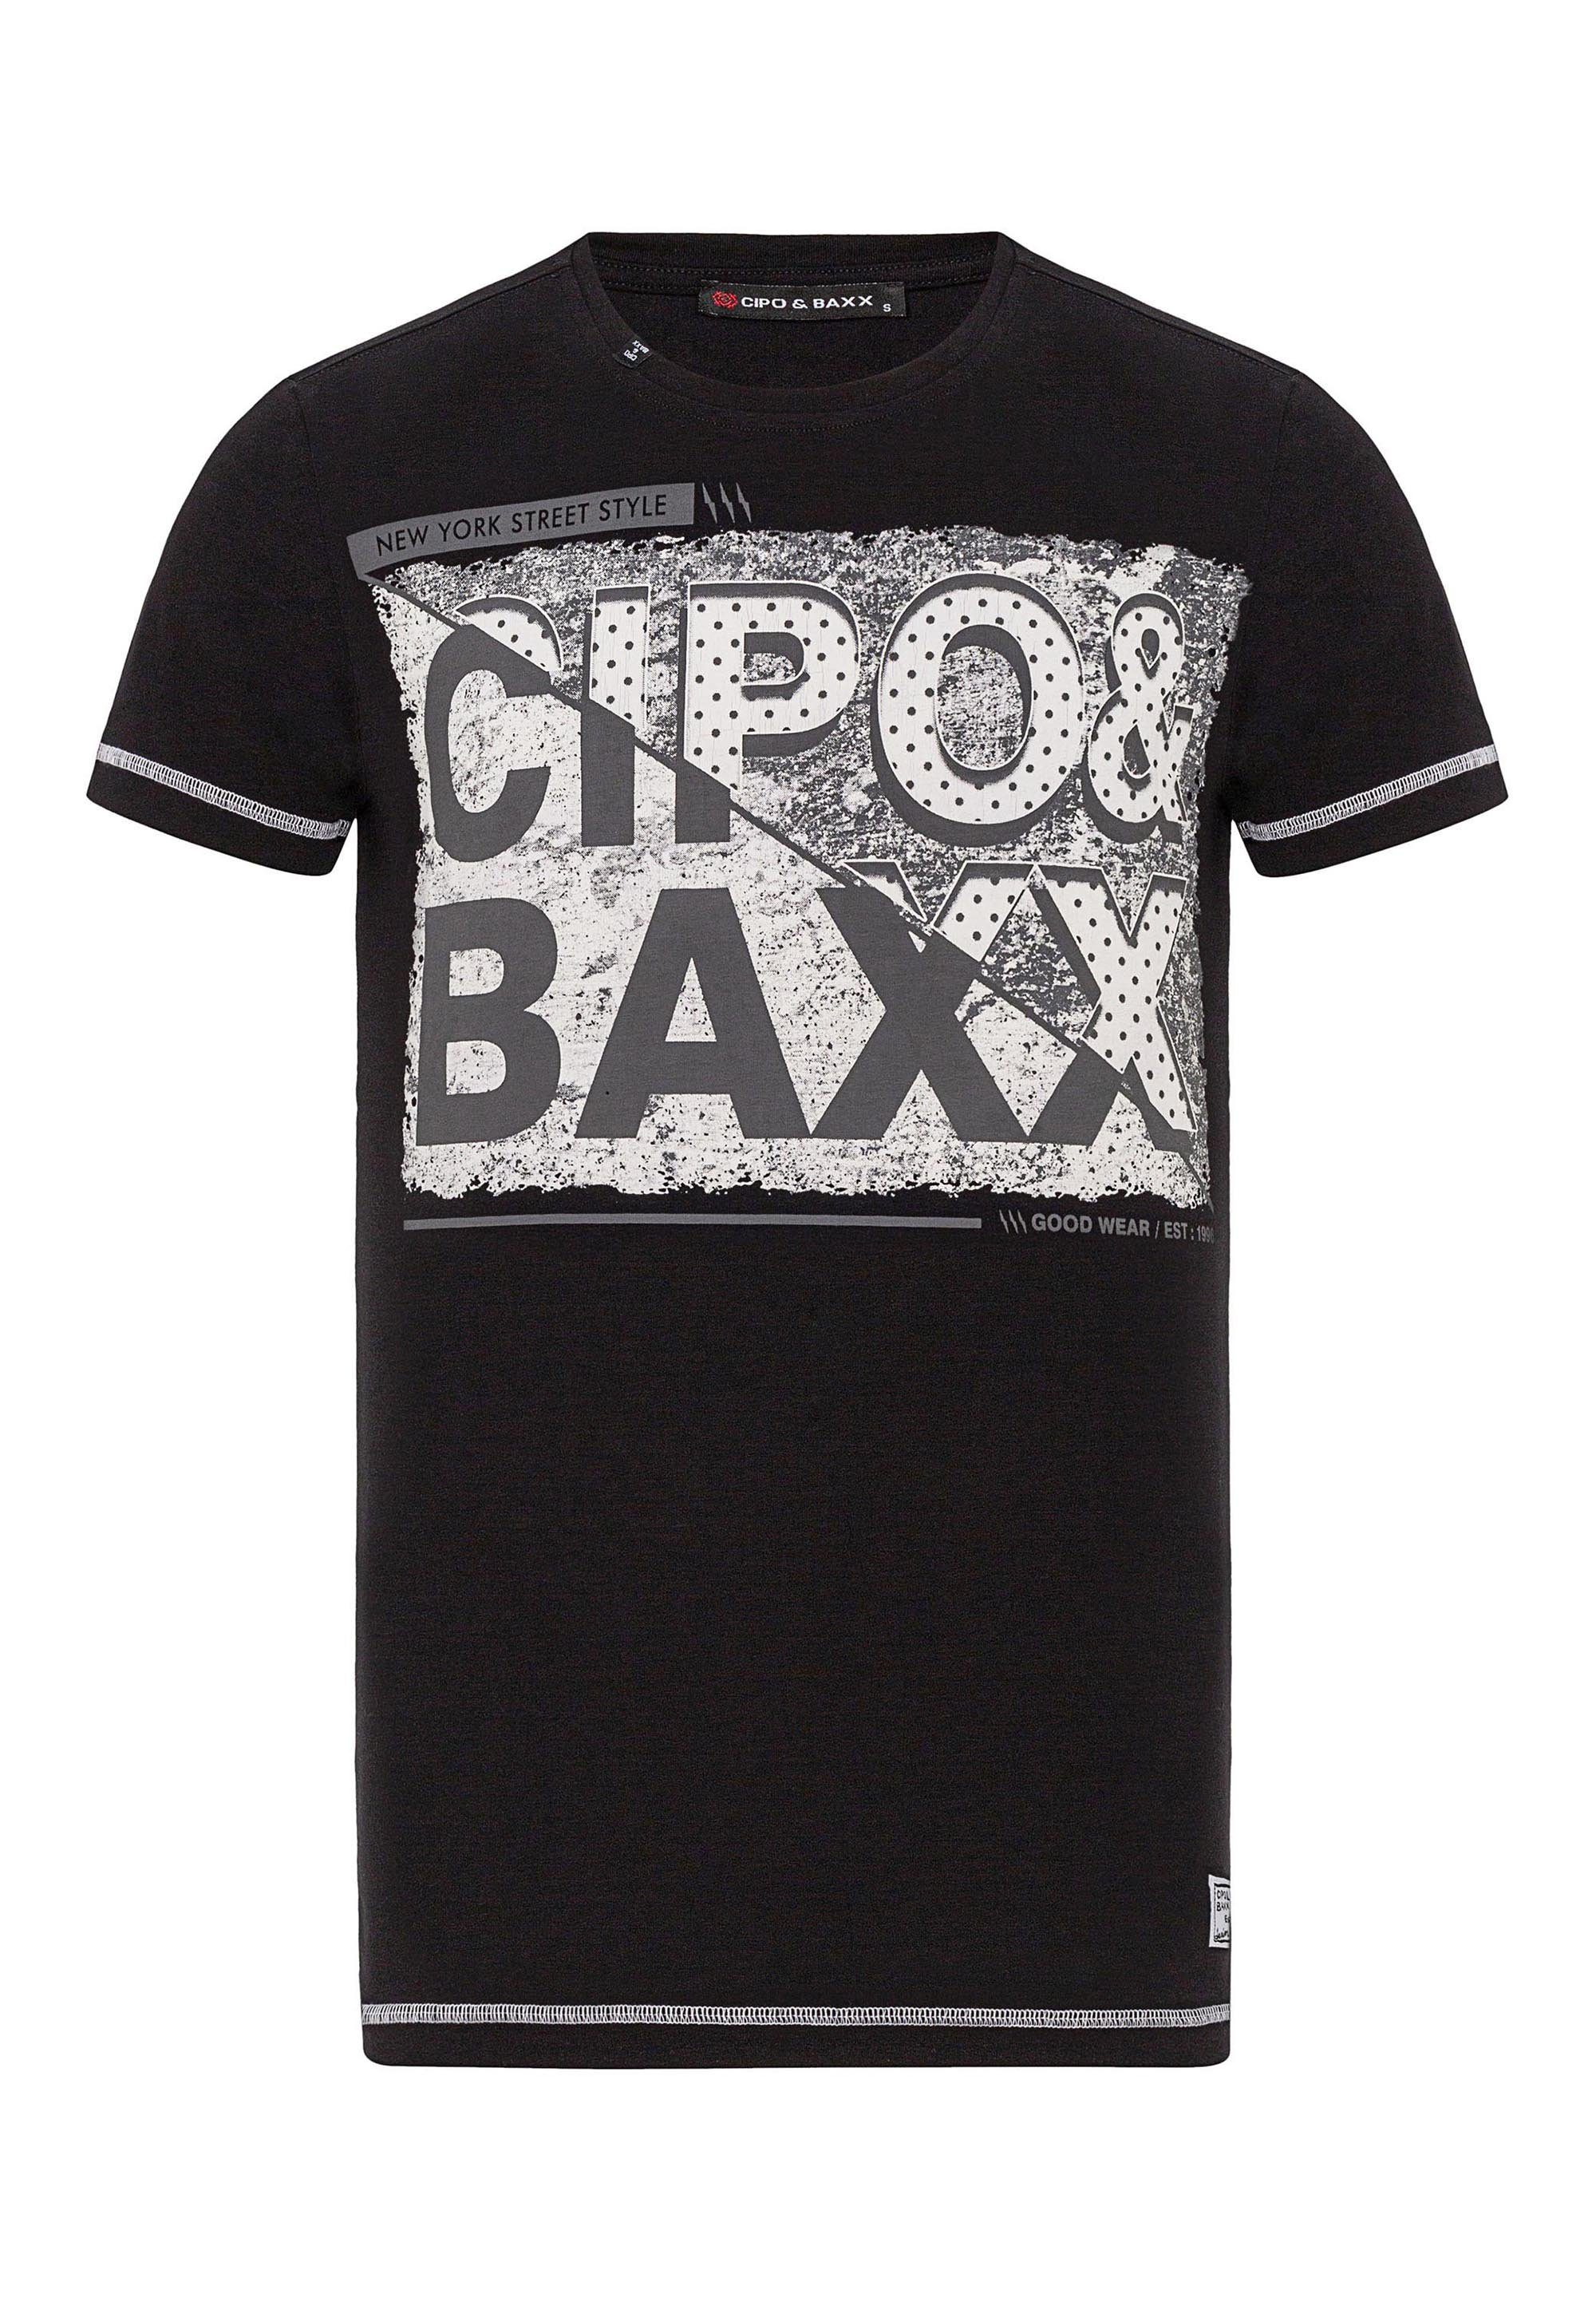 Cipo & mit schwarz Baxx großem T-Shirt Markenprint